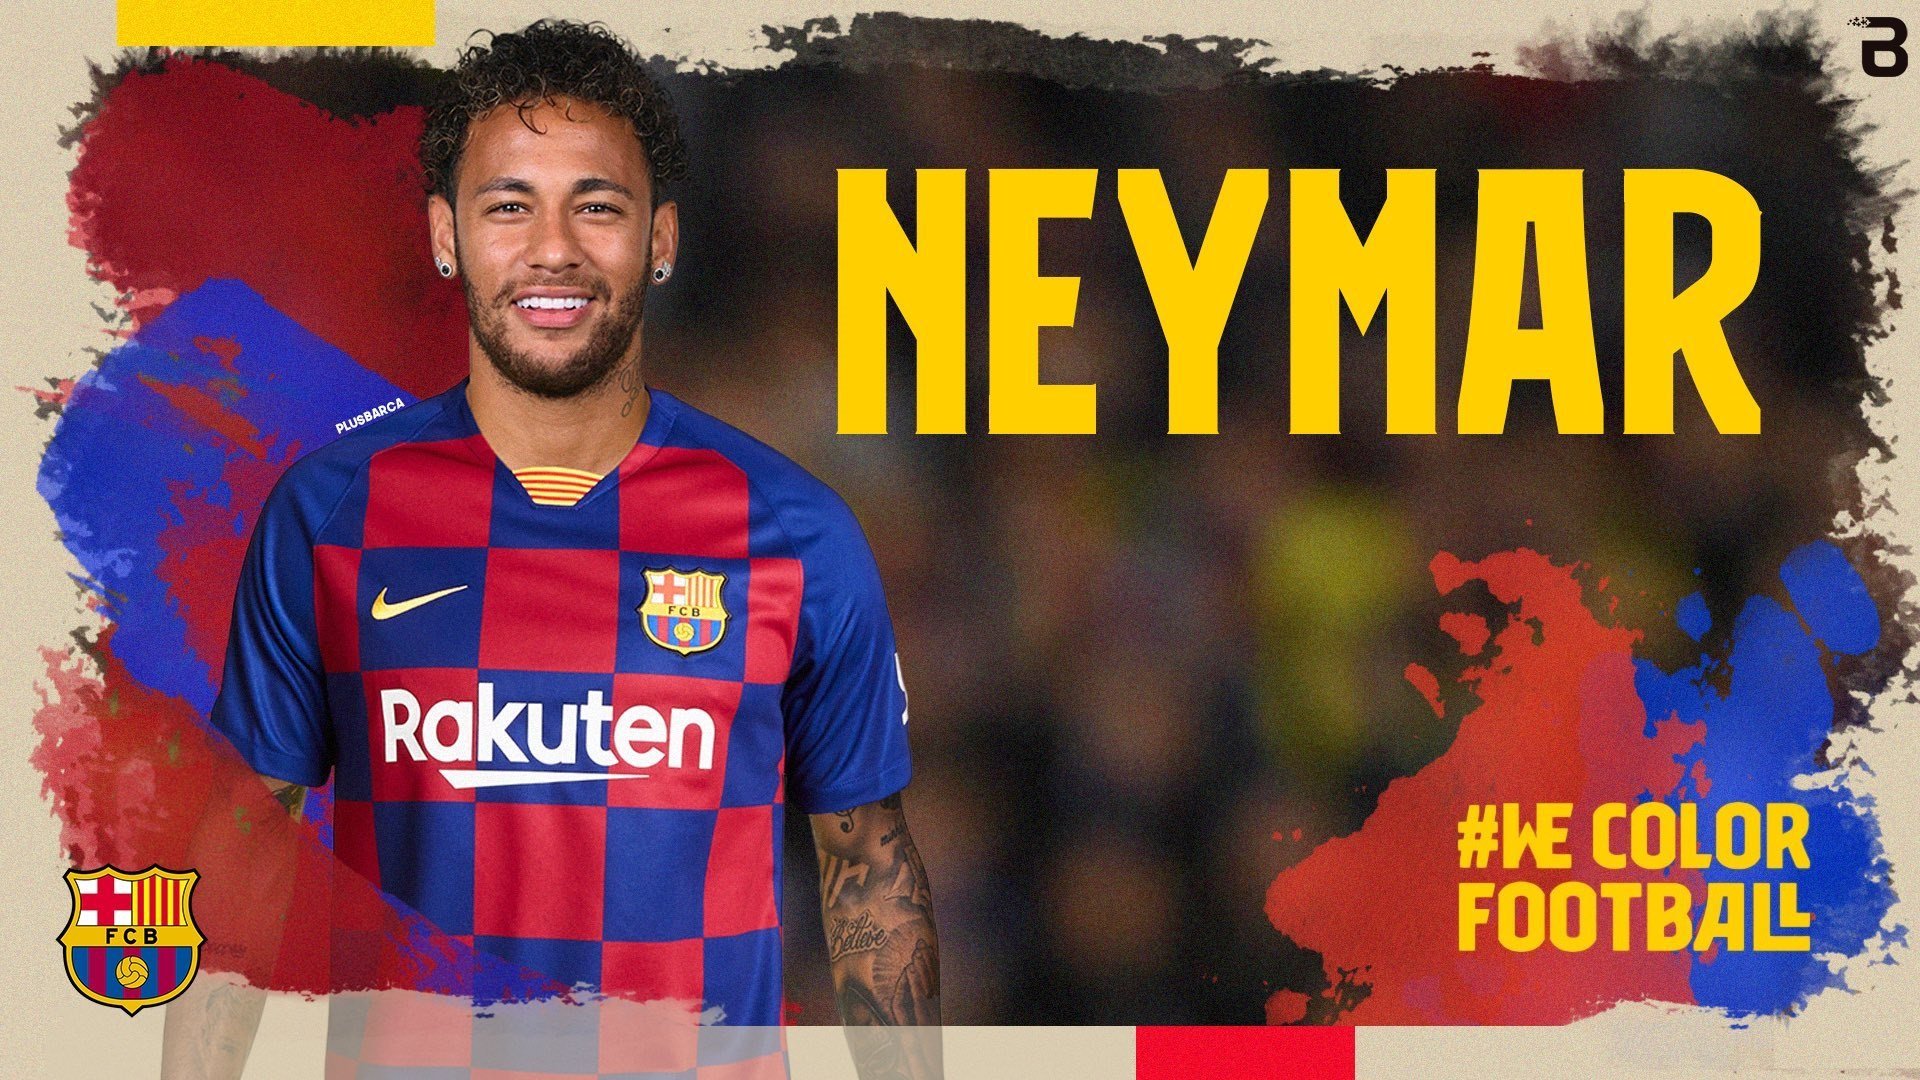 Els comptes de Twitter del Barça són hackejats i anuncien el fitxatge de Neymar